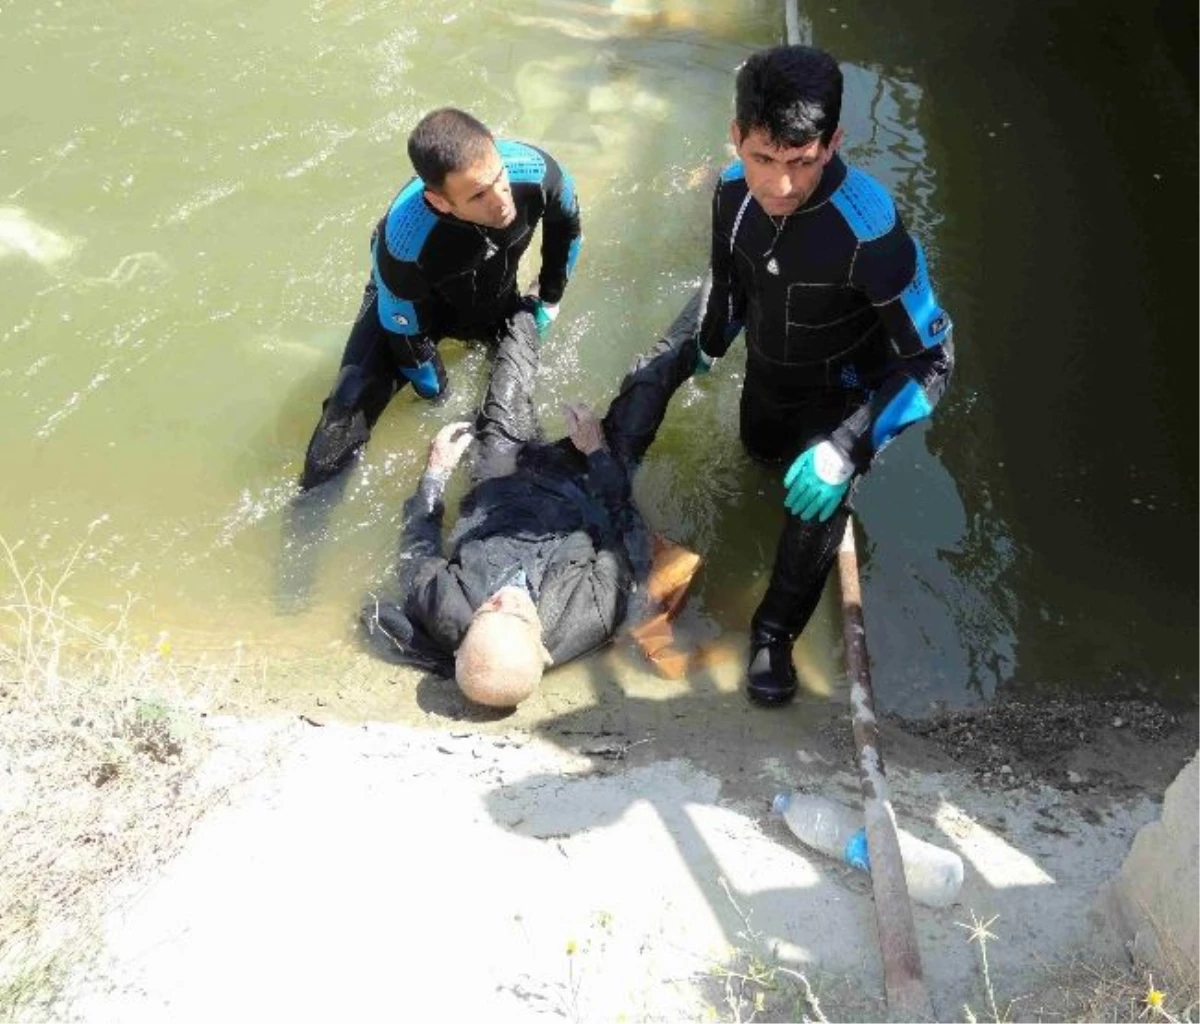 Sulama Kanalında Kadın Cesedi Bulundu